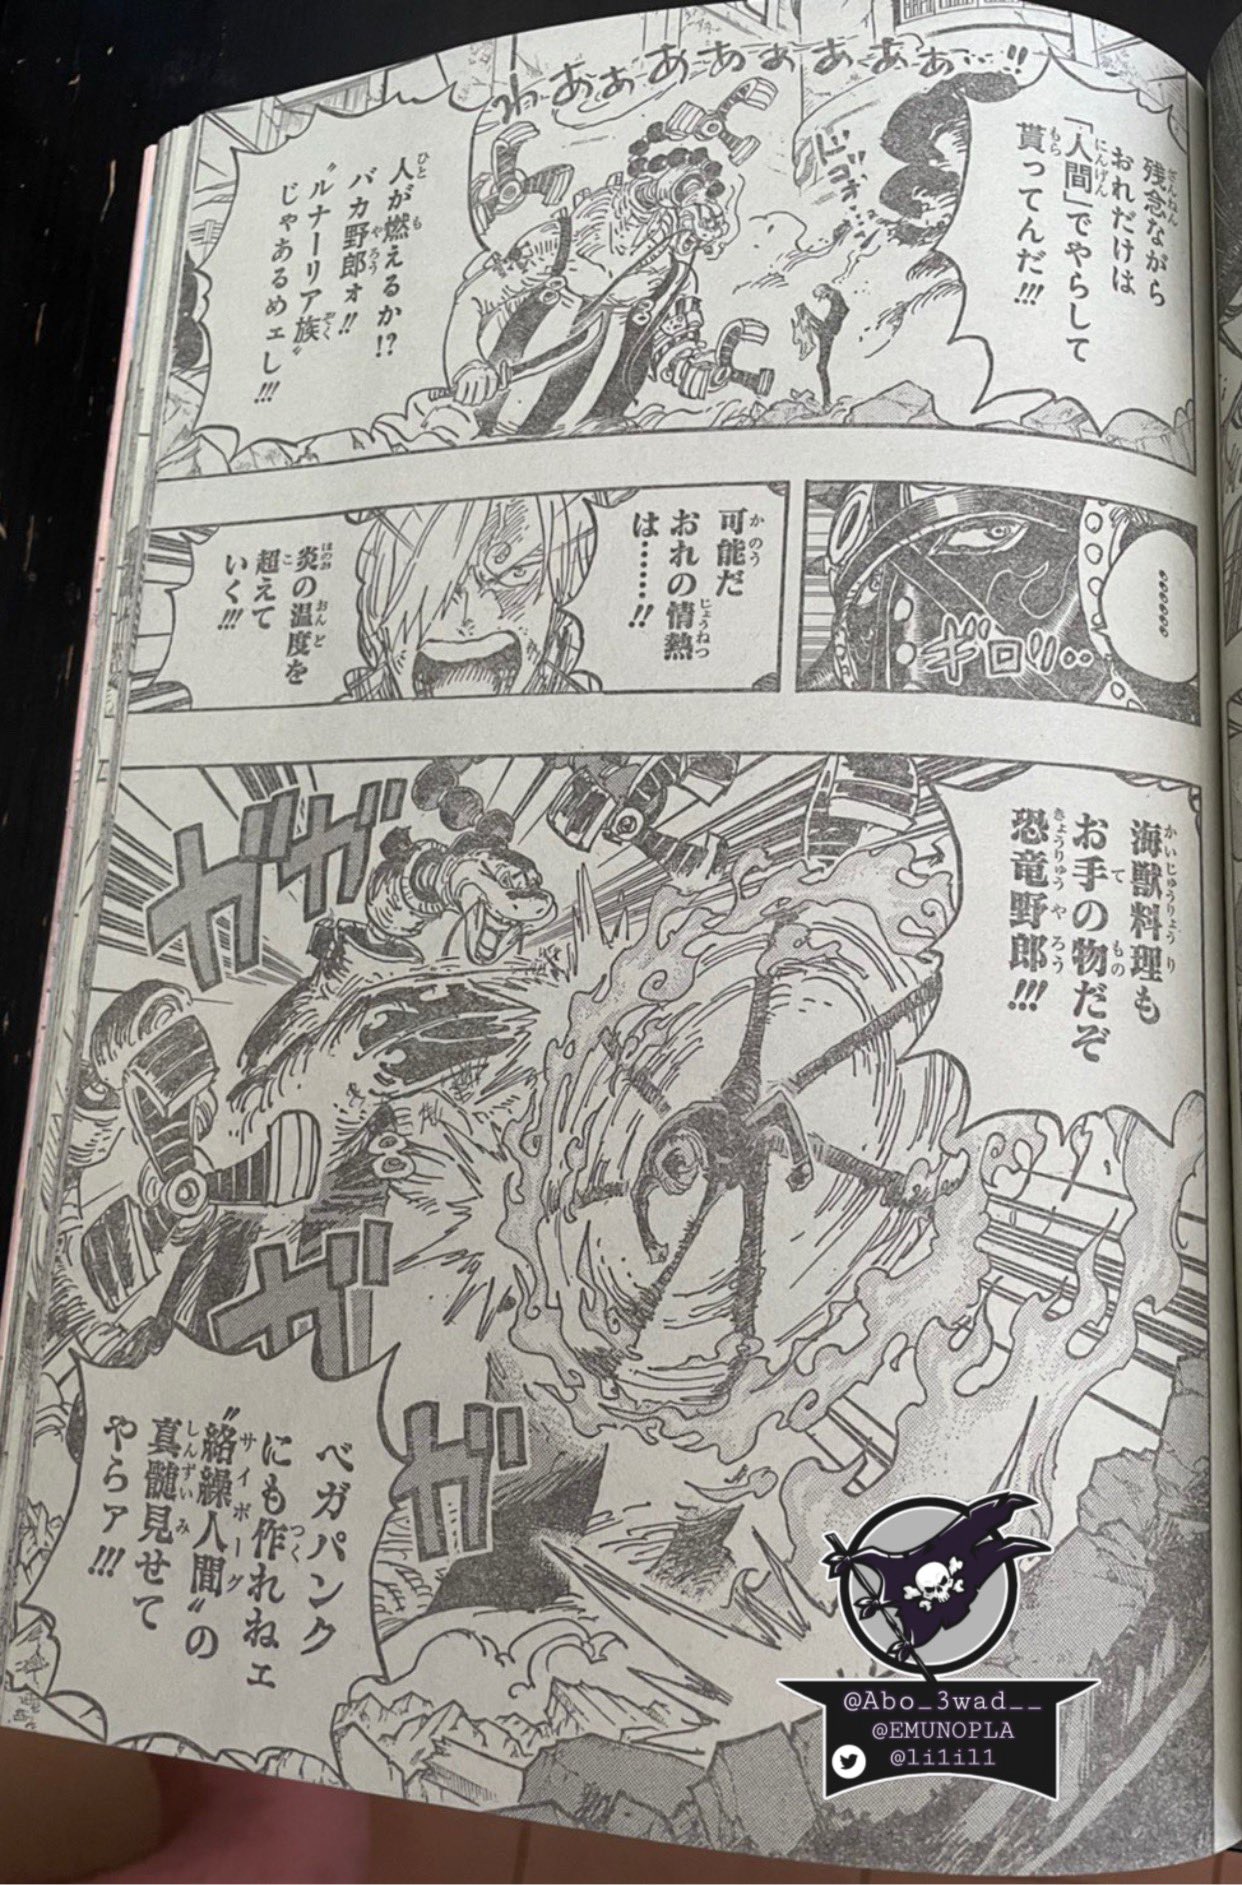 Afinal, Ushimaru pode realmente ser pai do Zoro em One Piece